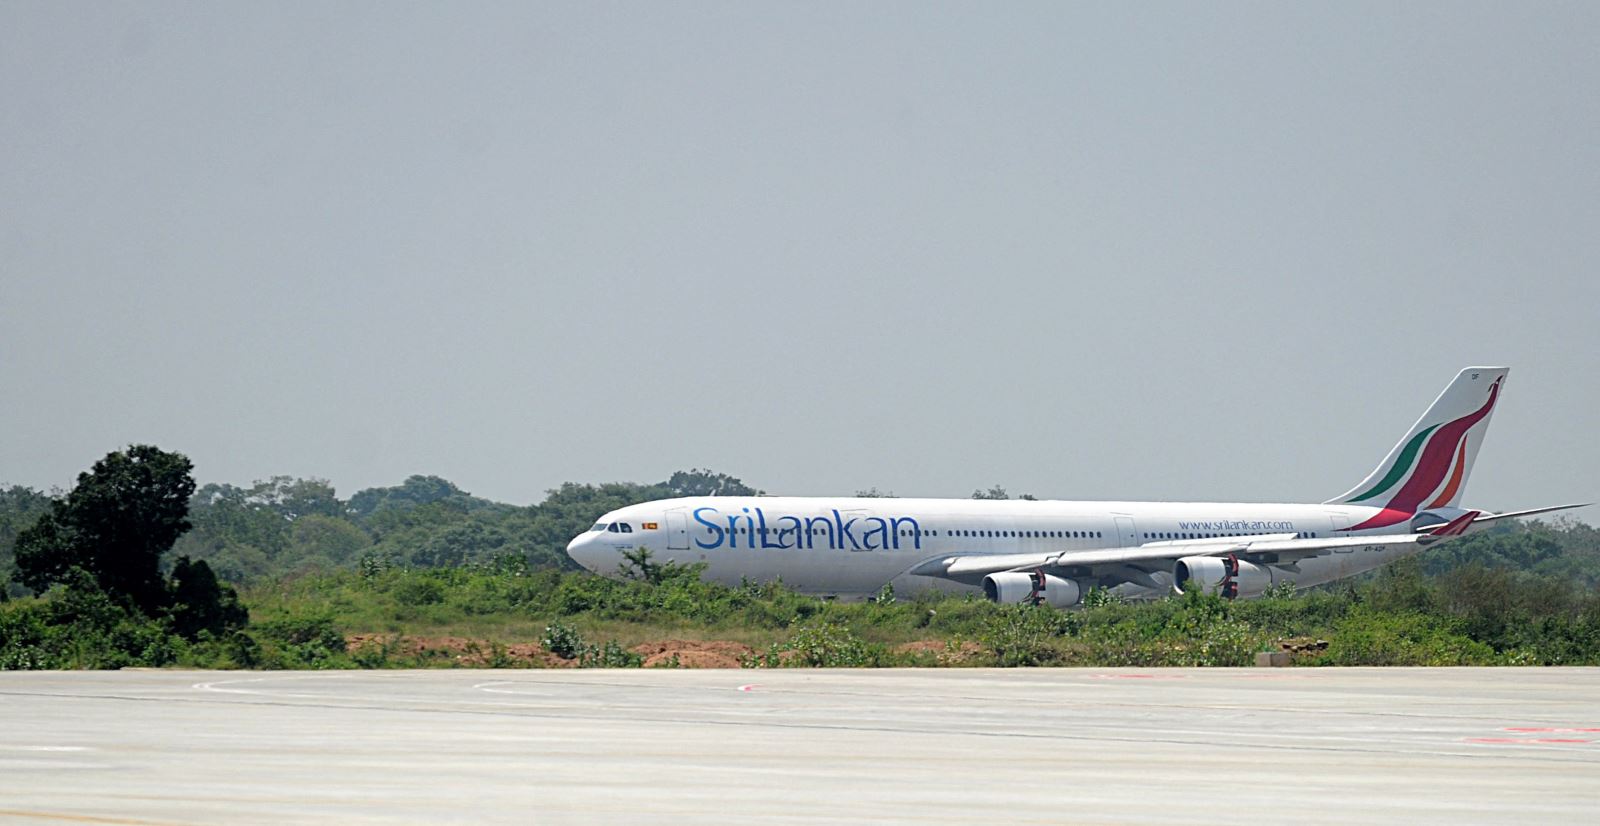 Máy bay của hãng hàng không Sri Lankan Airlines. Ảnh: AFP/Getty Images